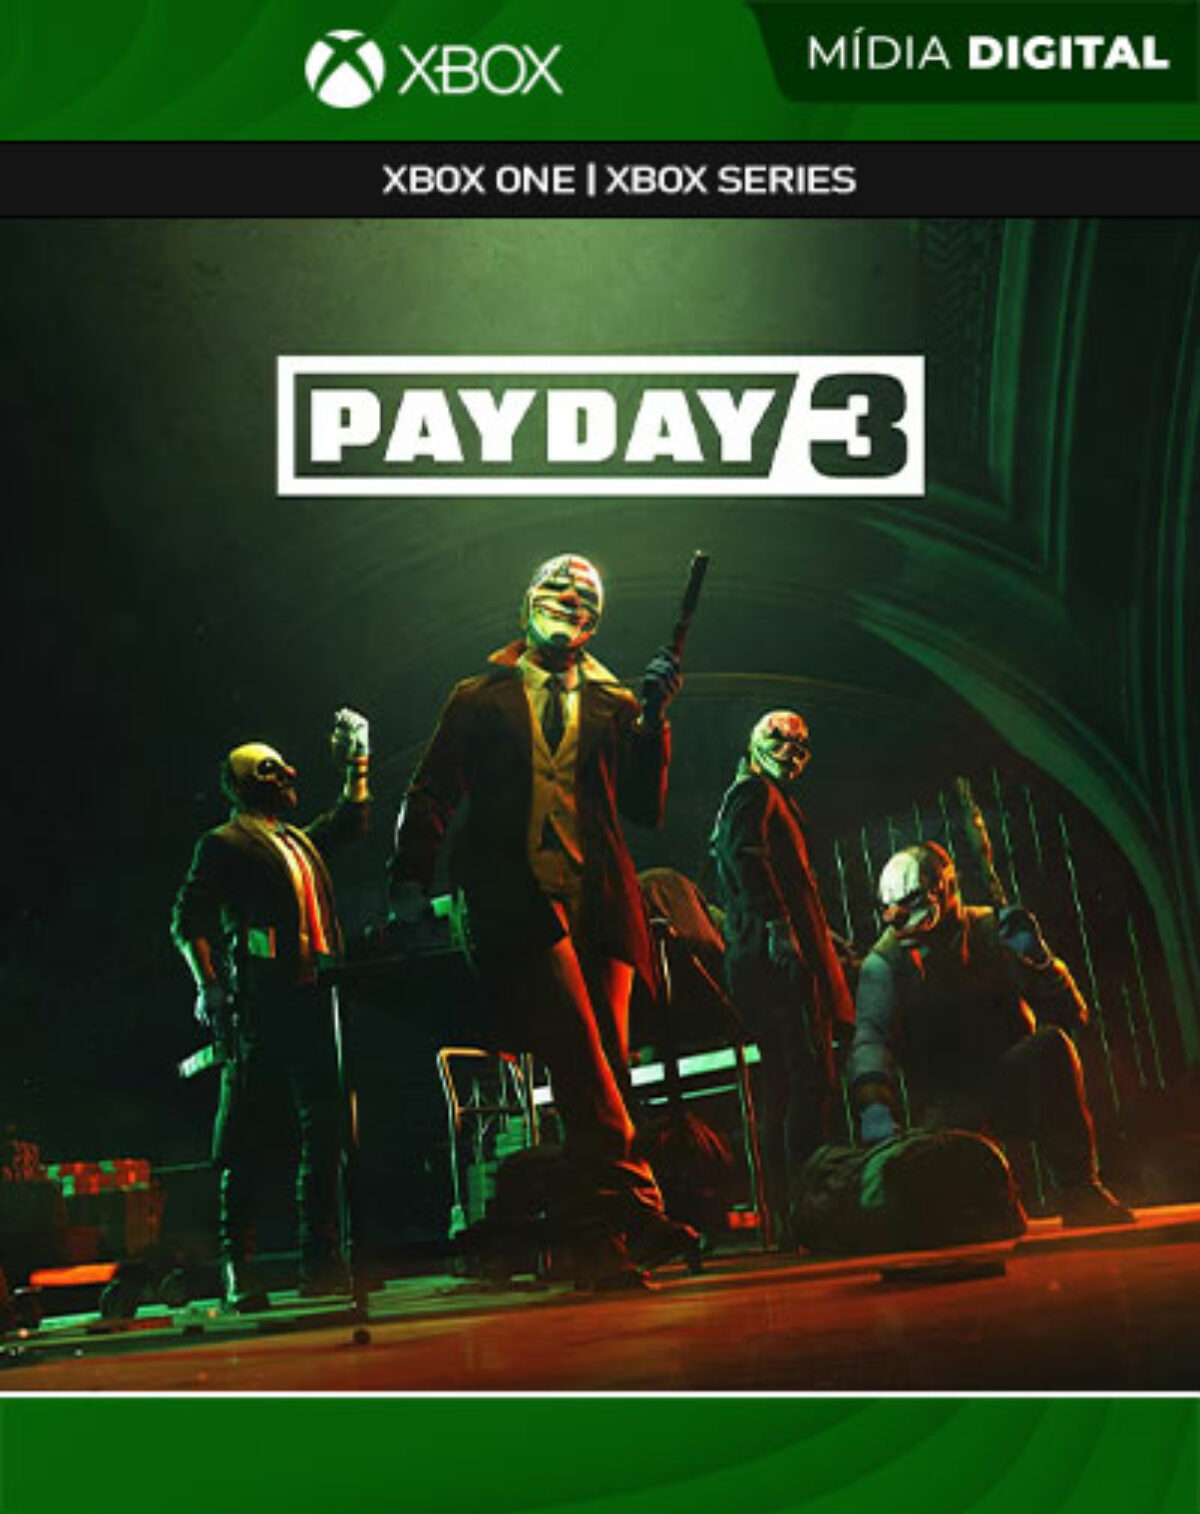 Jogos de xbox 360 payday: Com o melhor preço